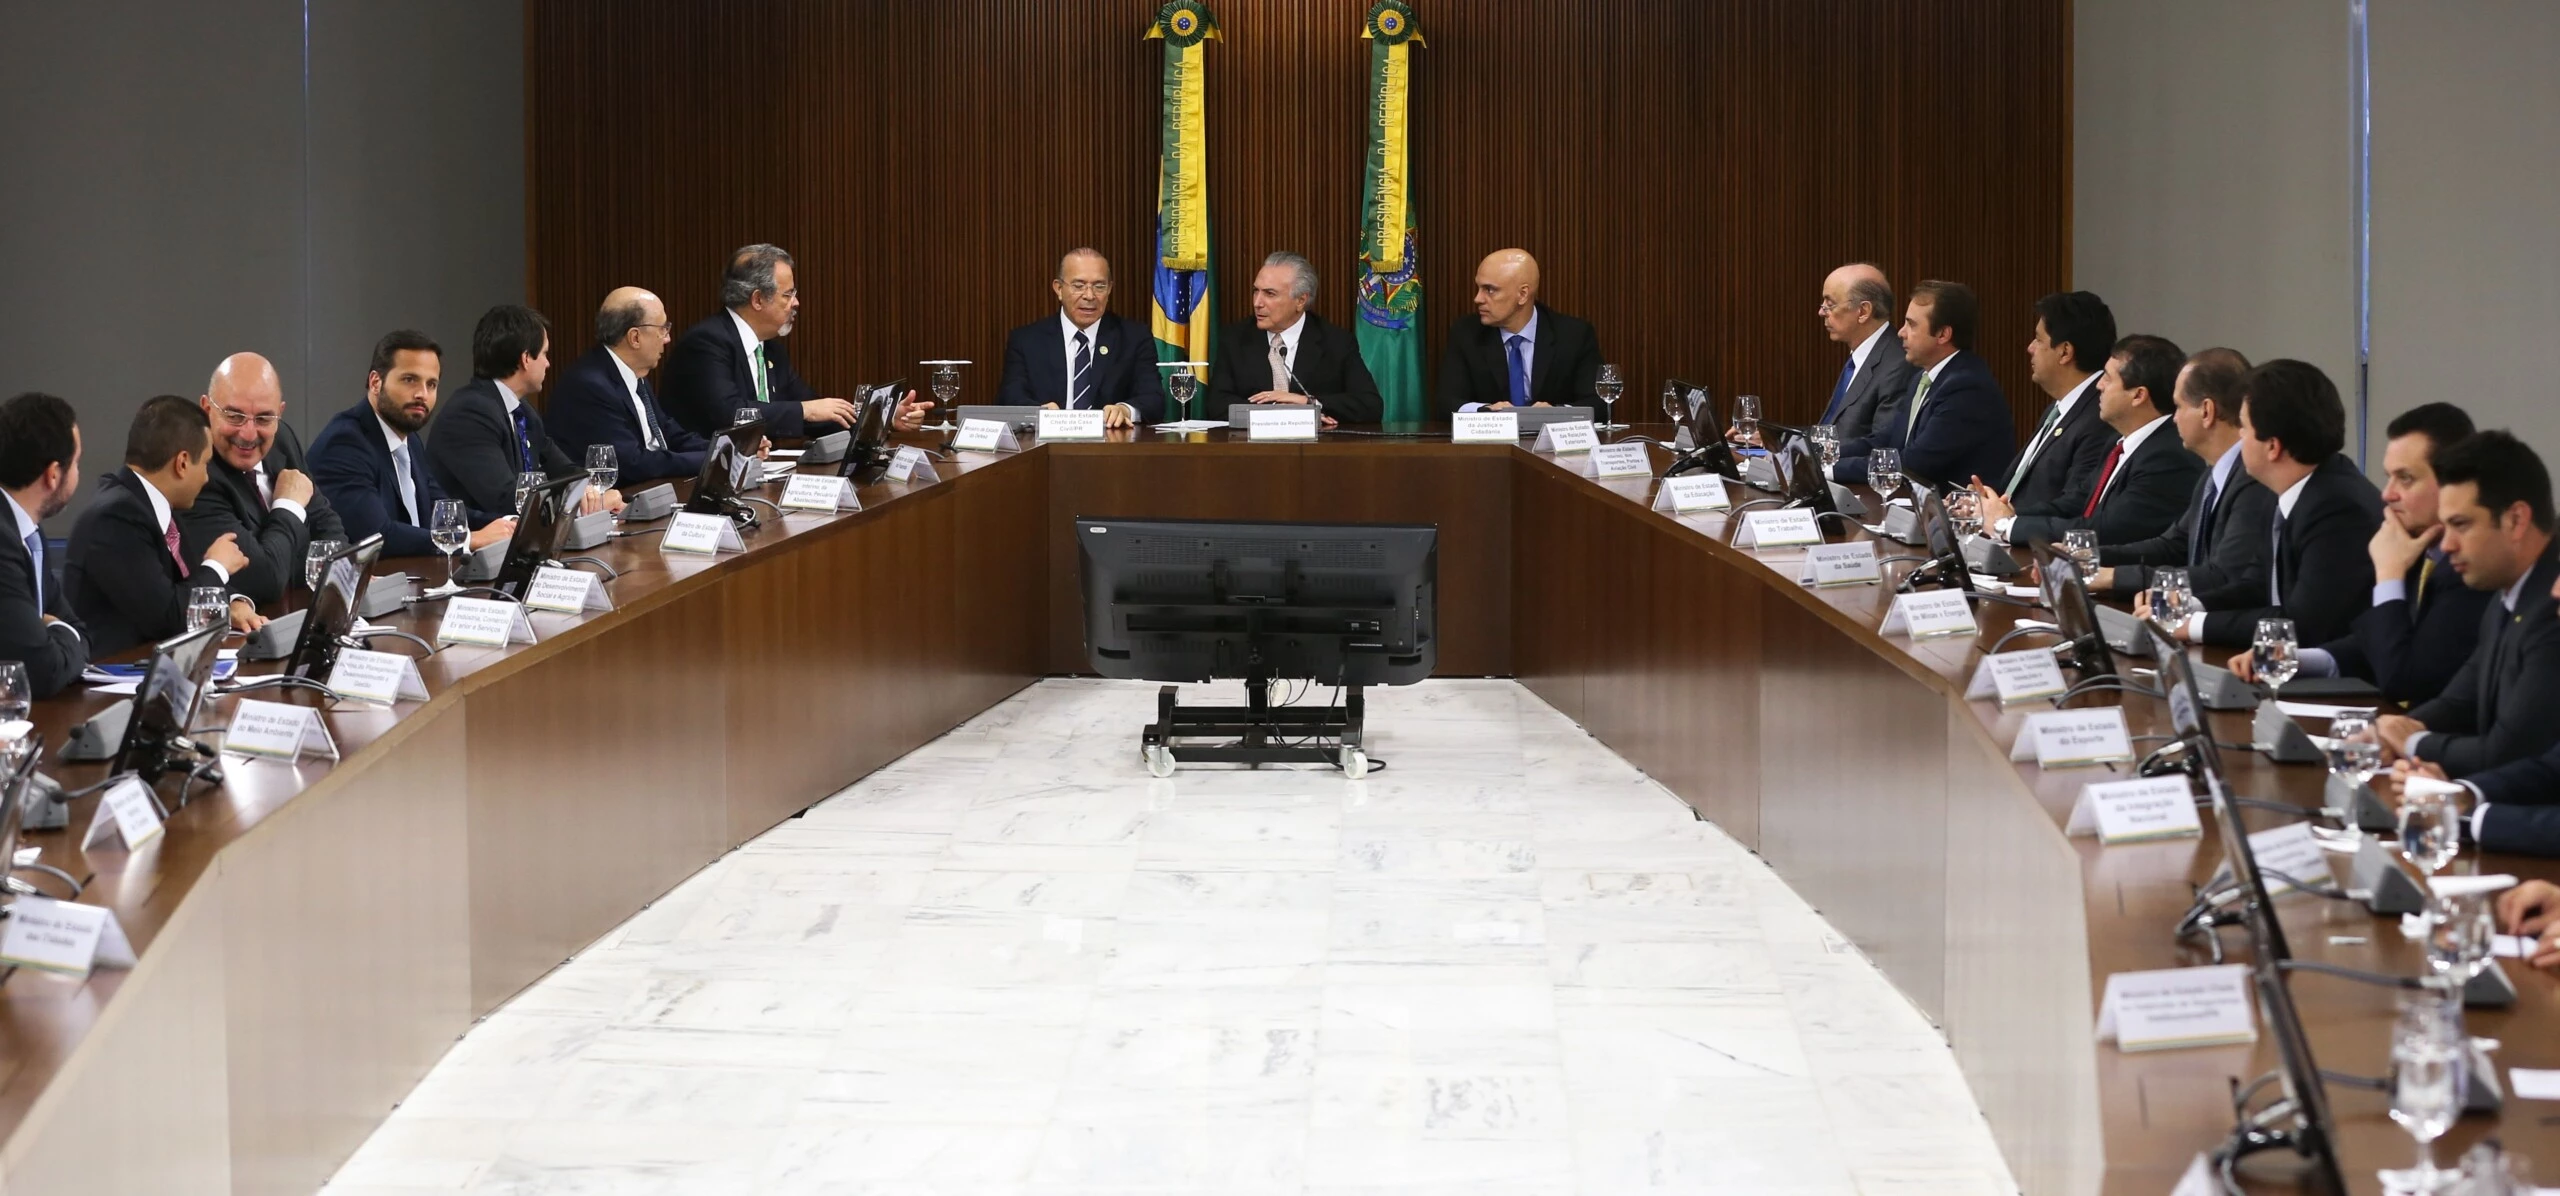 Brasília - Michel Temer coordena primeira reunião com sua equipe após tomar posse na Presidência da República do Brasil (Valter Campanato/Agência Brasil)